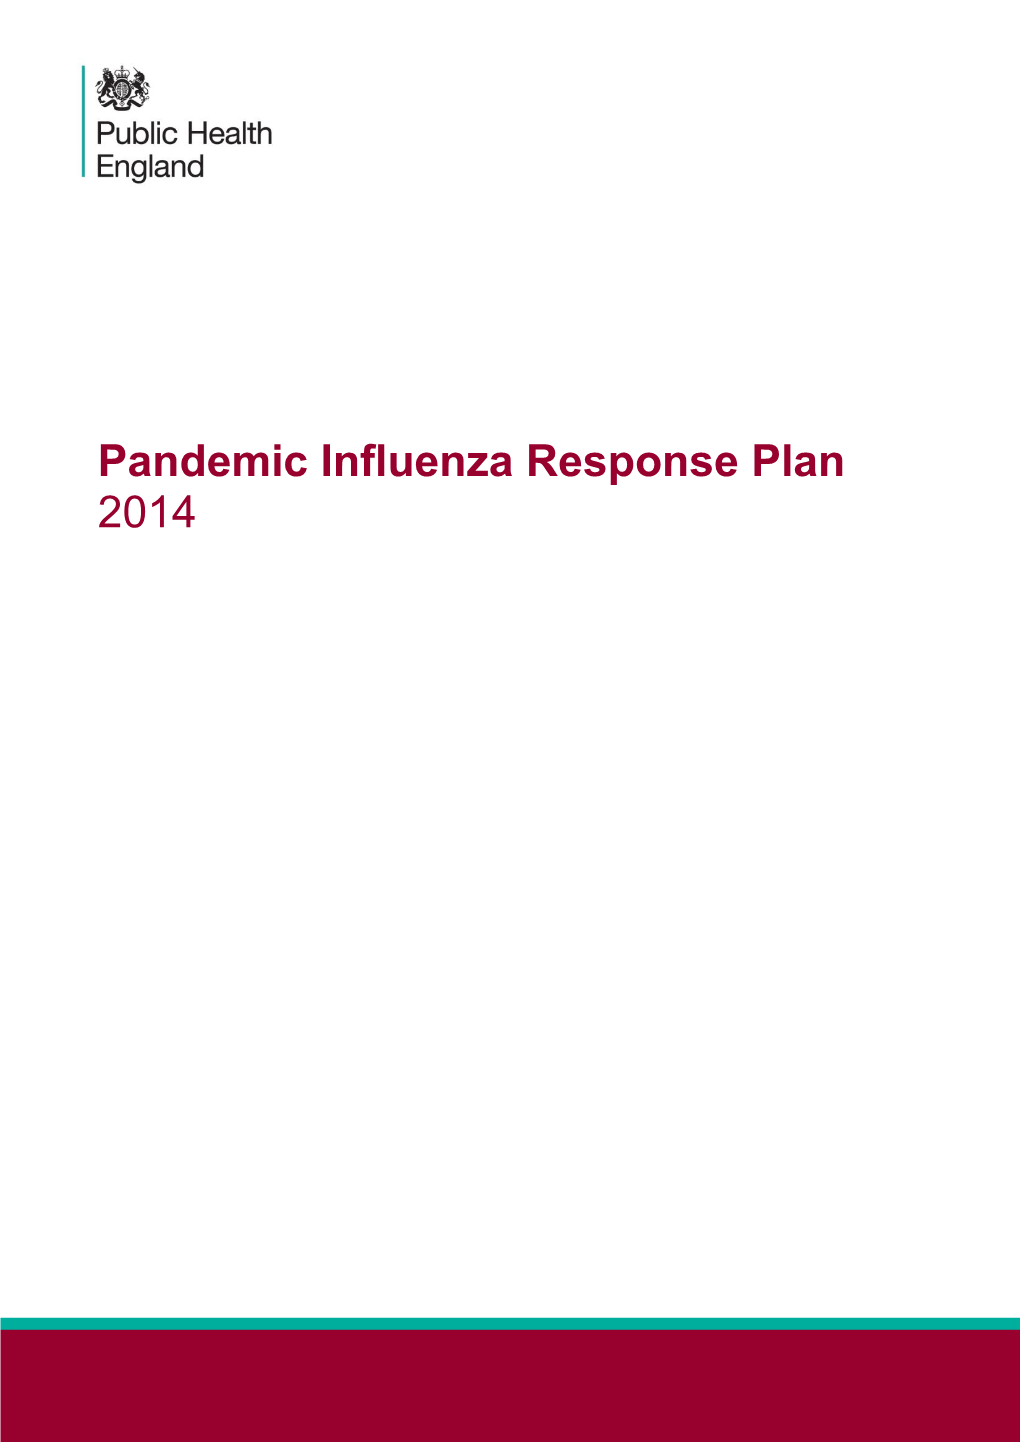 Pandemic Influenza Response Plan: 2014